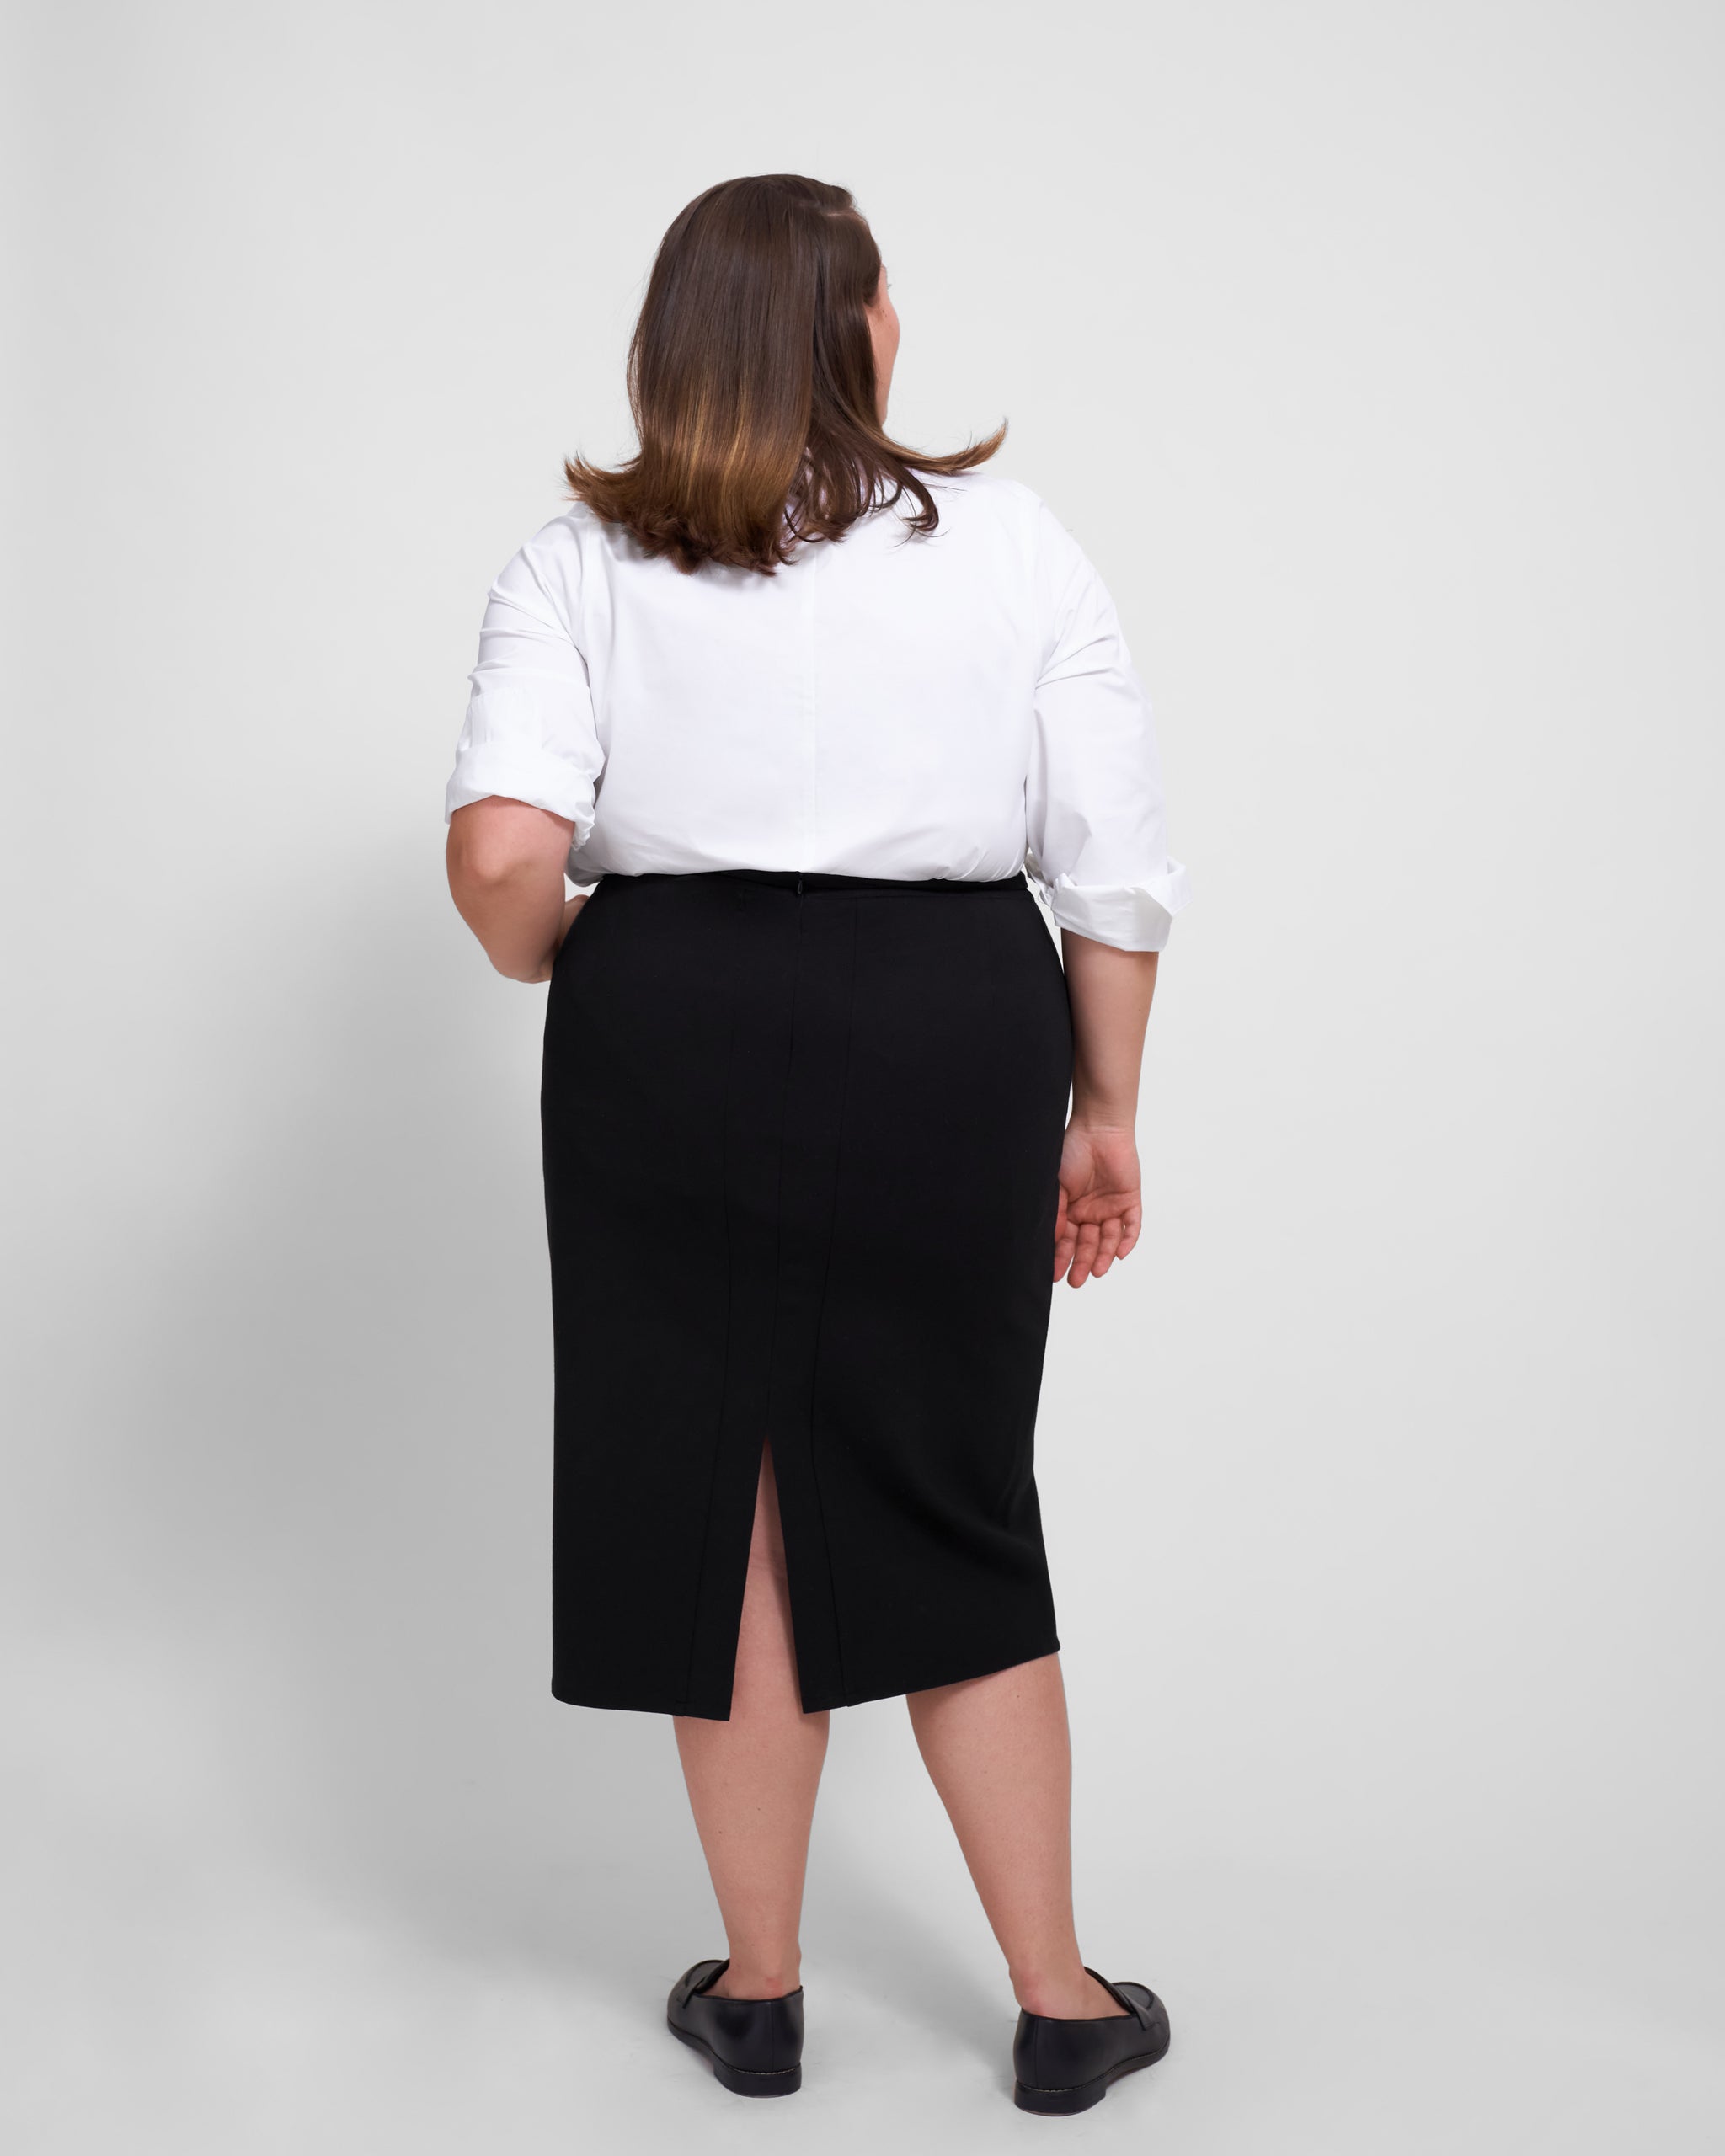 Buy An Informal Black Pencil Skirt For Women In USA